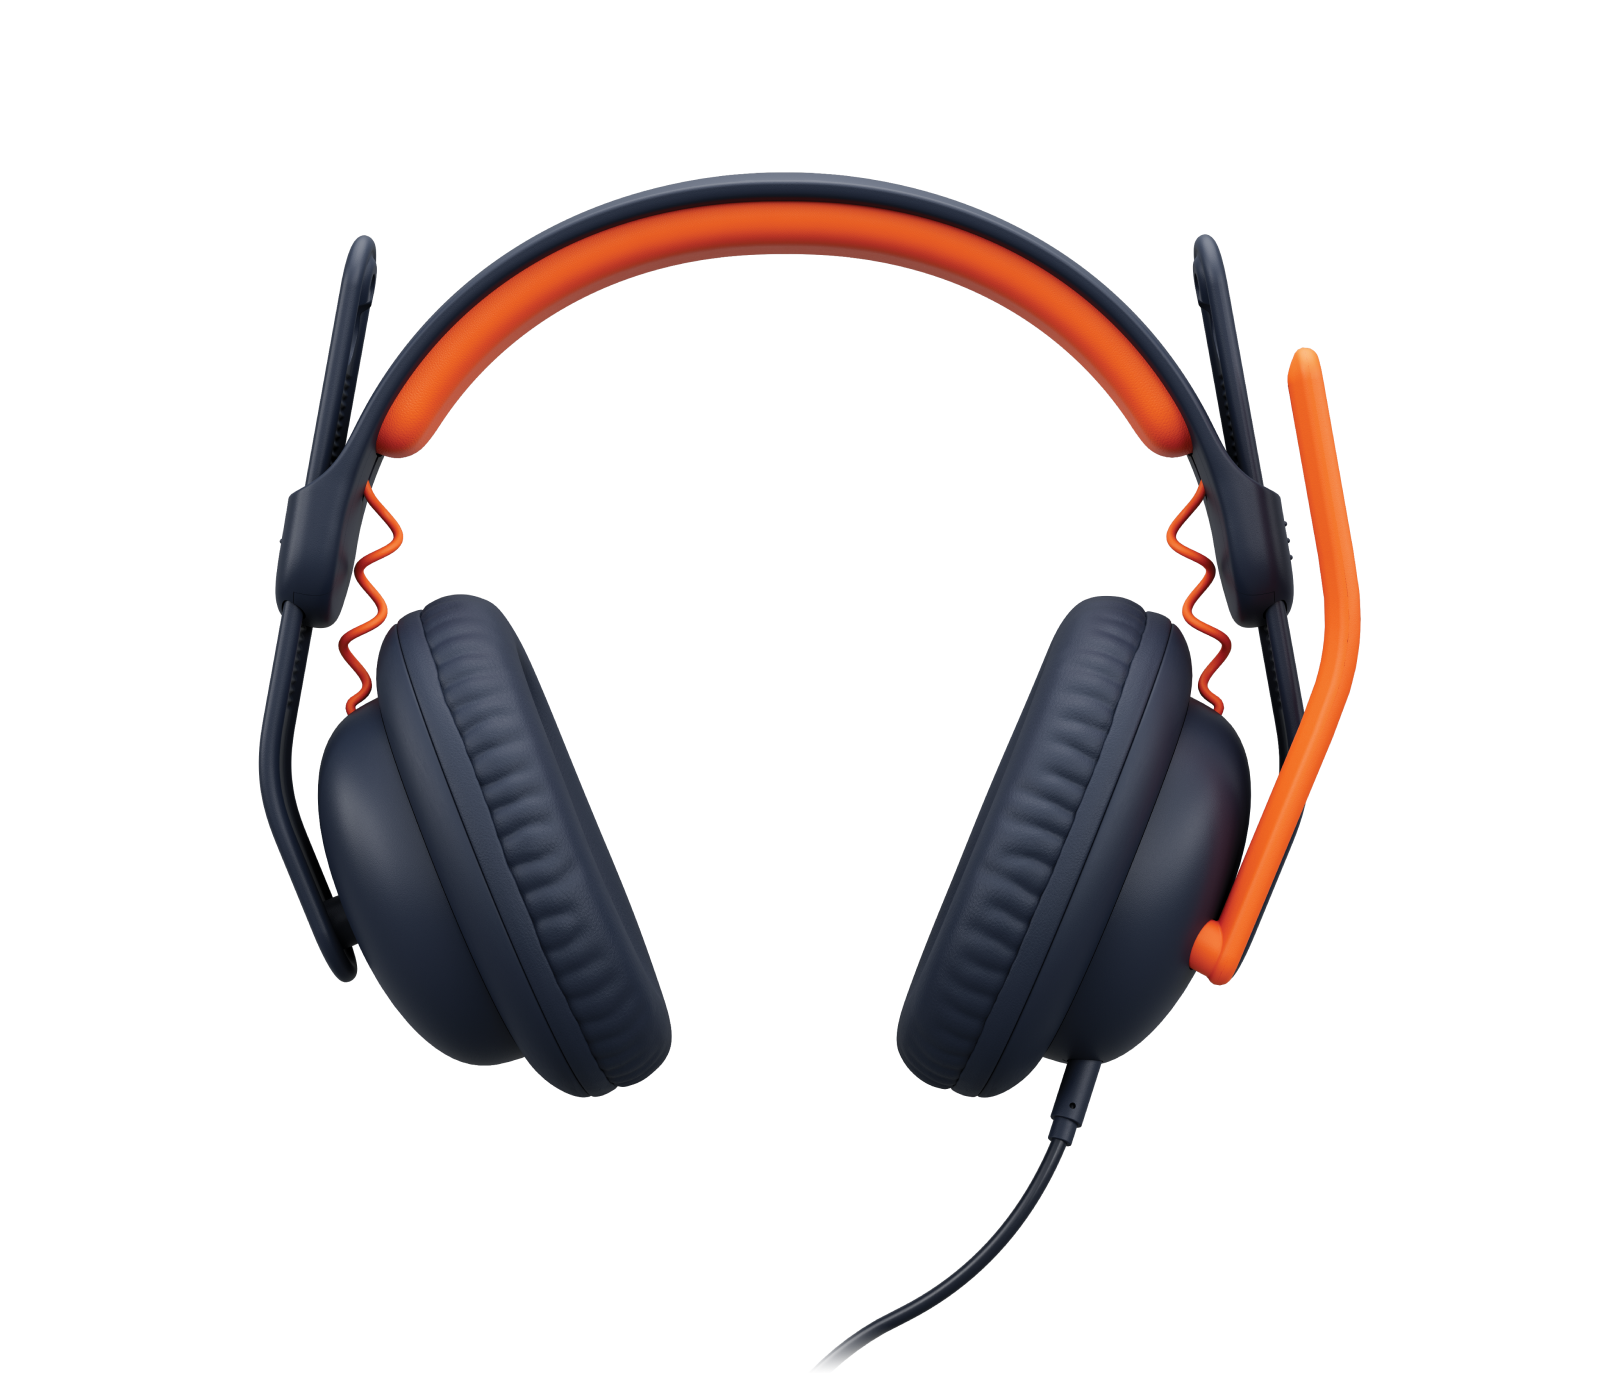 Logitech Zone Learn Wired Headset in Orange